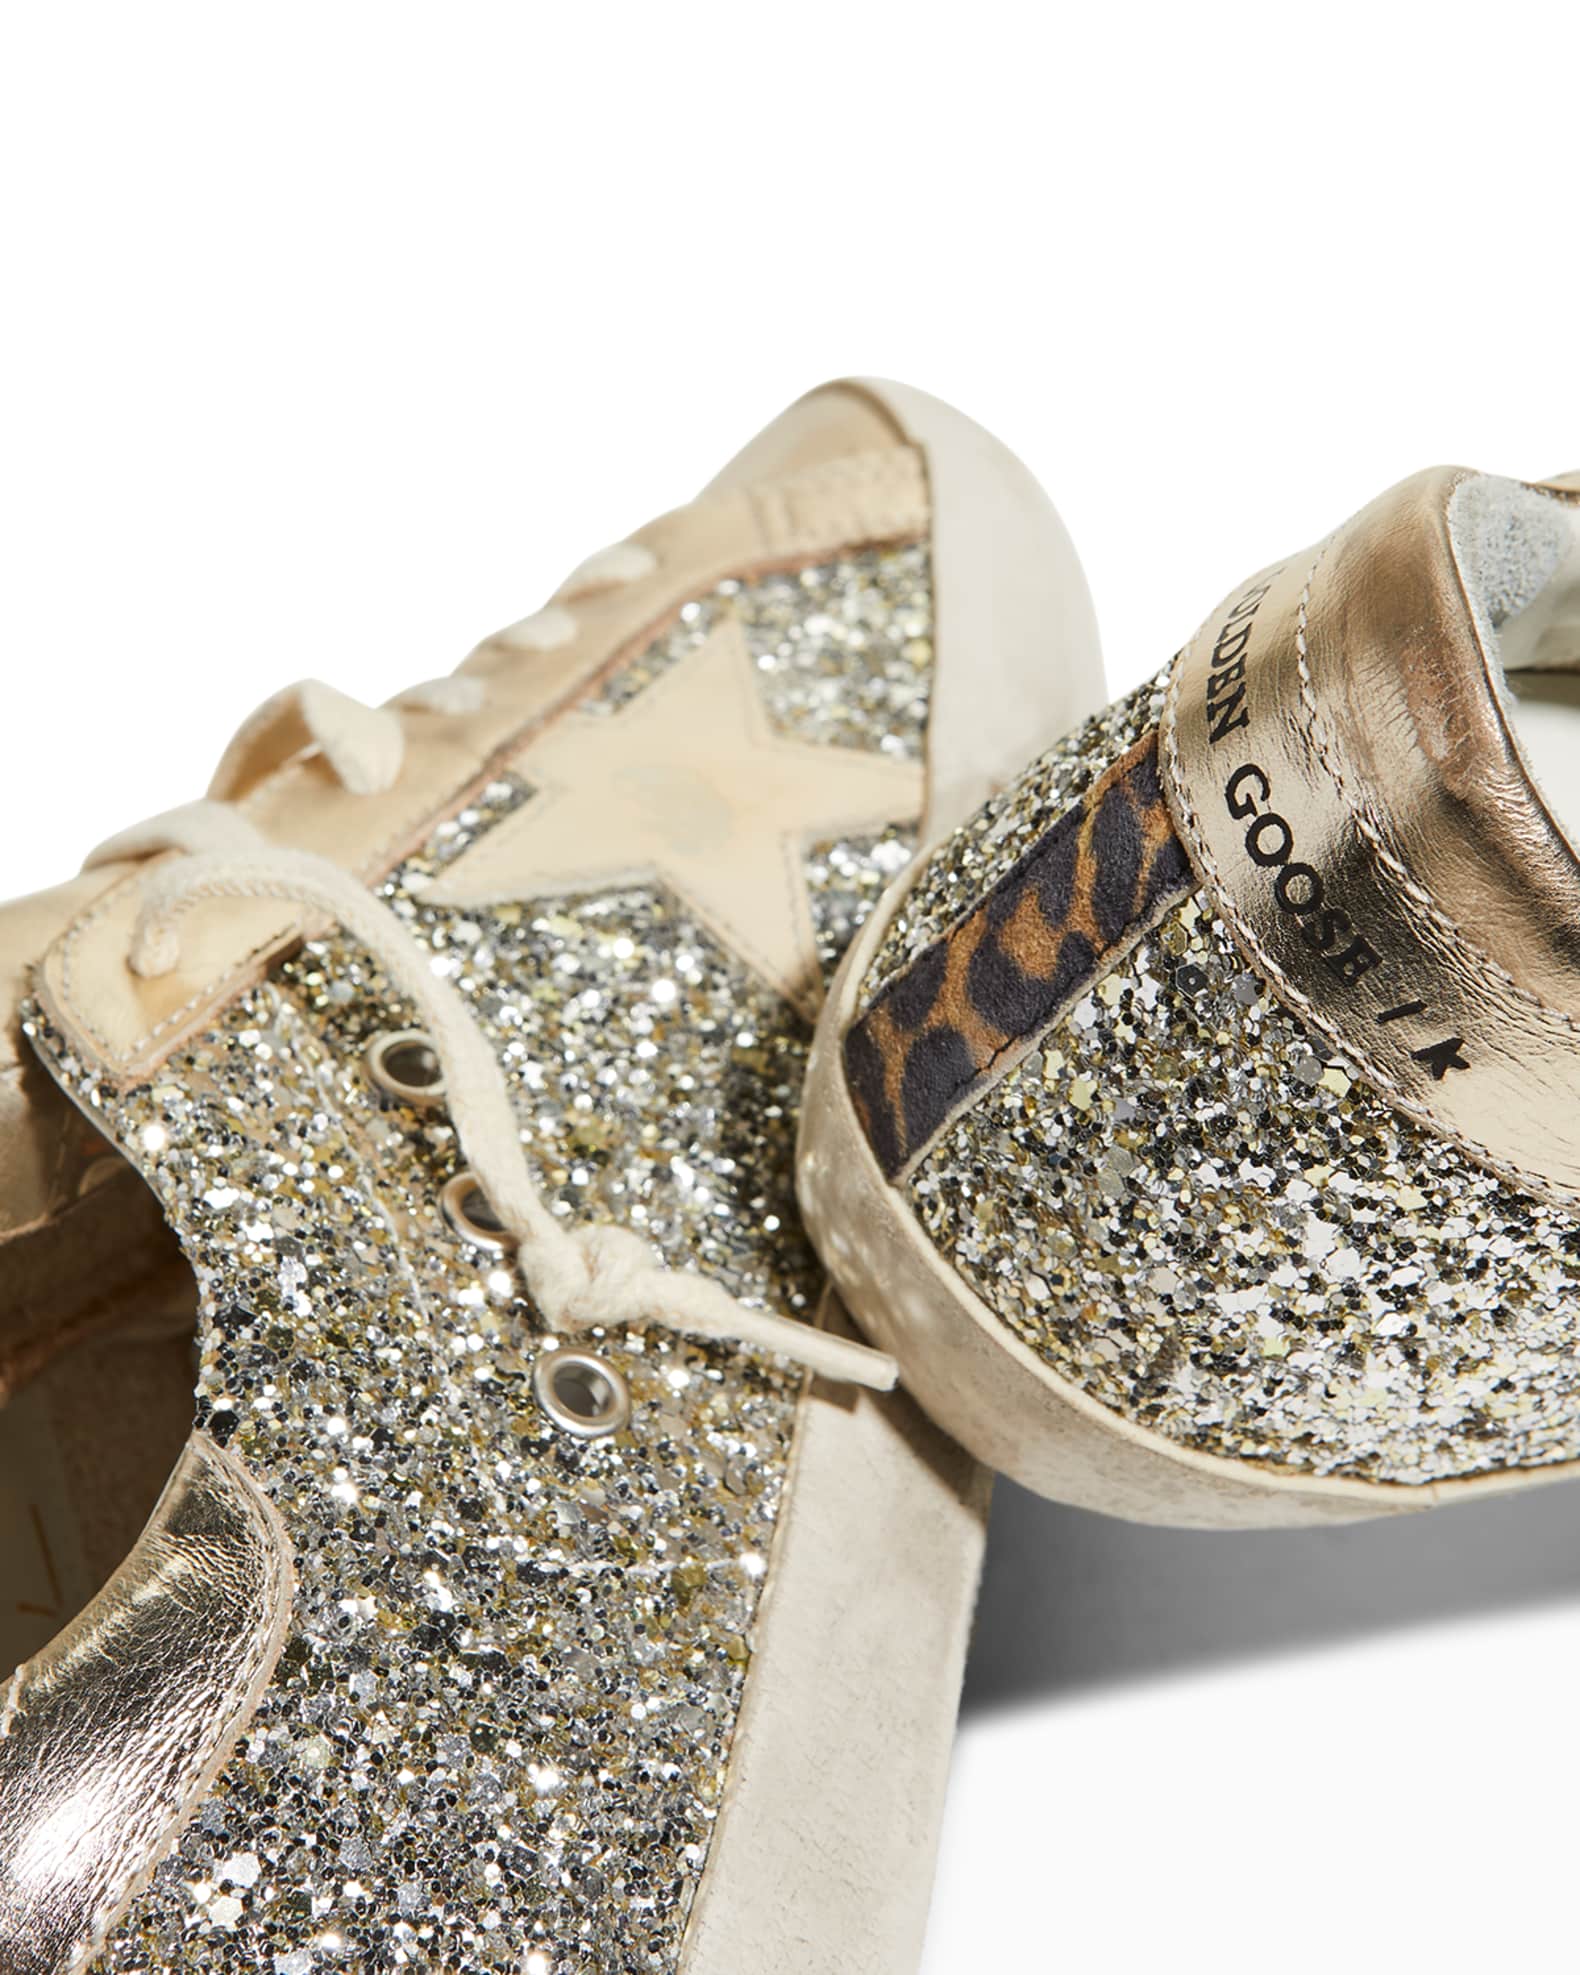 Golden Goose Superstar Metallic Glitter Low-Top Sneakers | Neiman Marcus